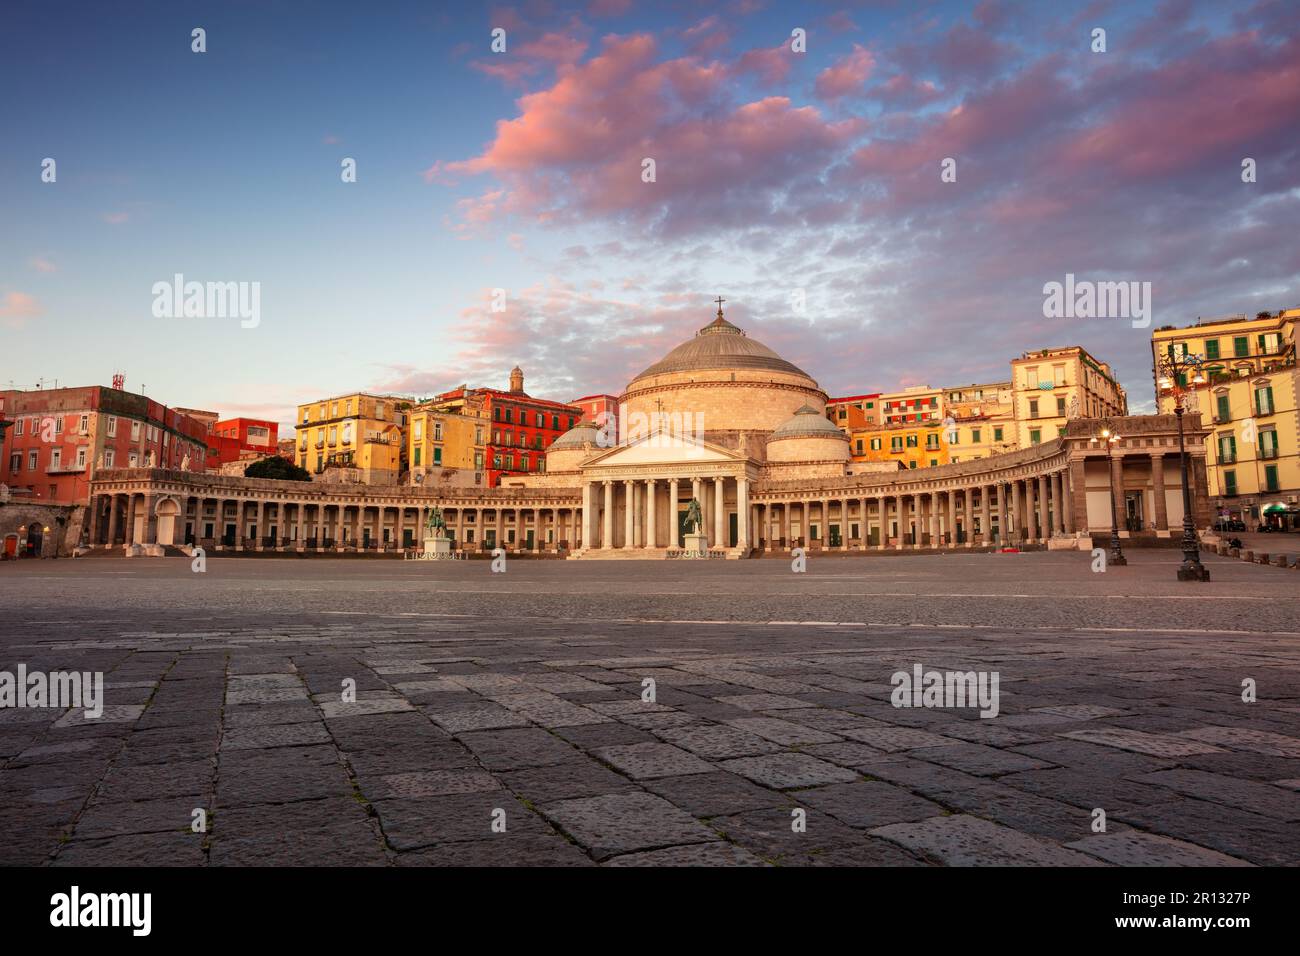 Neapel, Italien. Stadtbild von Neapel, Italien, mit Blick auf den großen öffentlichen Platz Piazza del Plebiscito bei Sonnenaufgang. Stockfoto